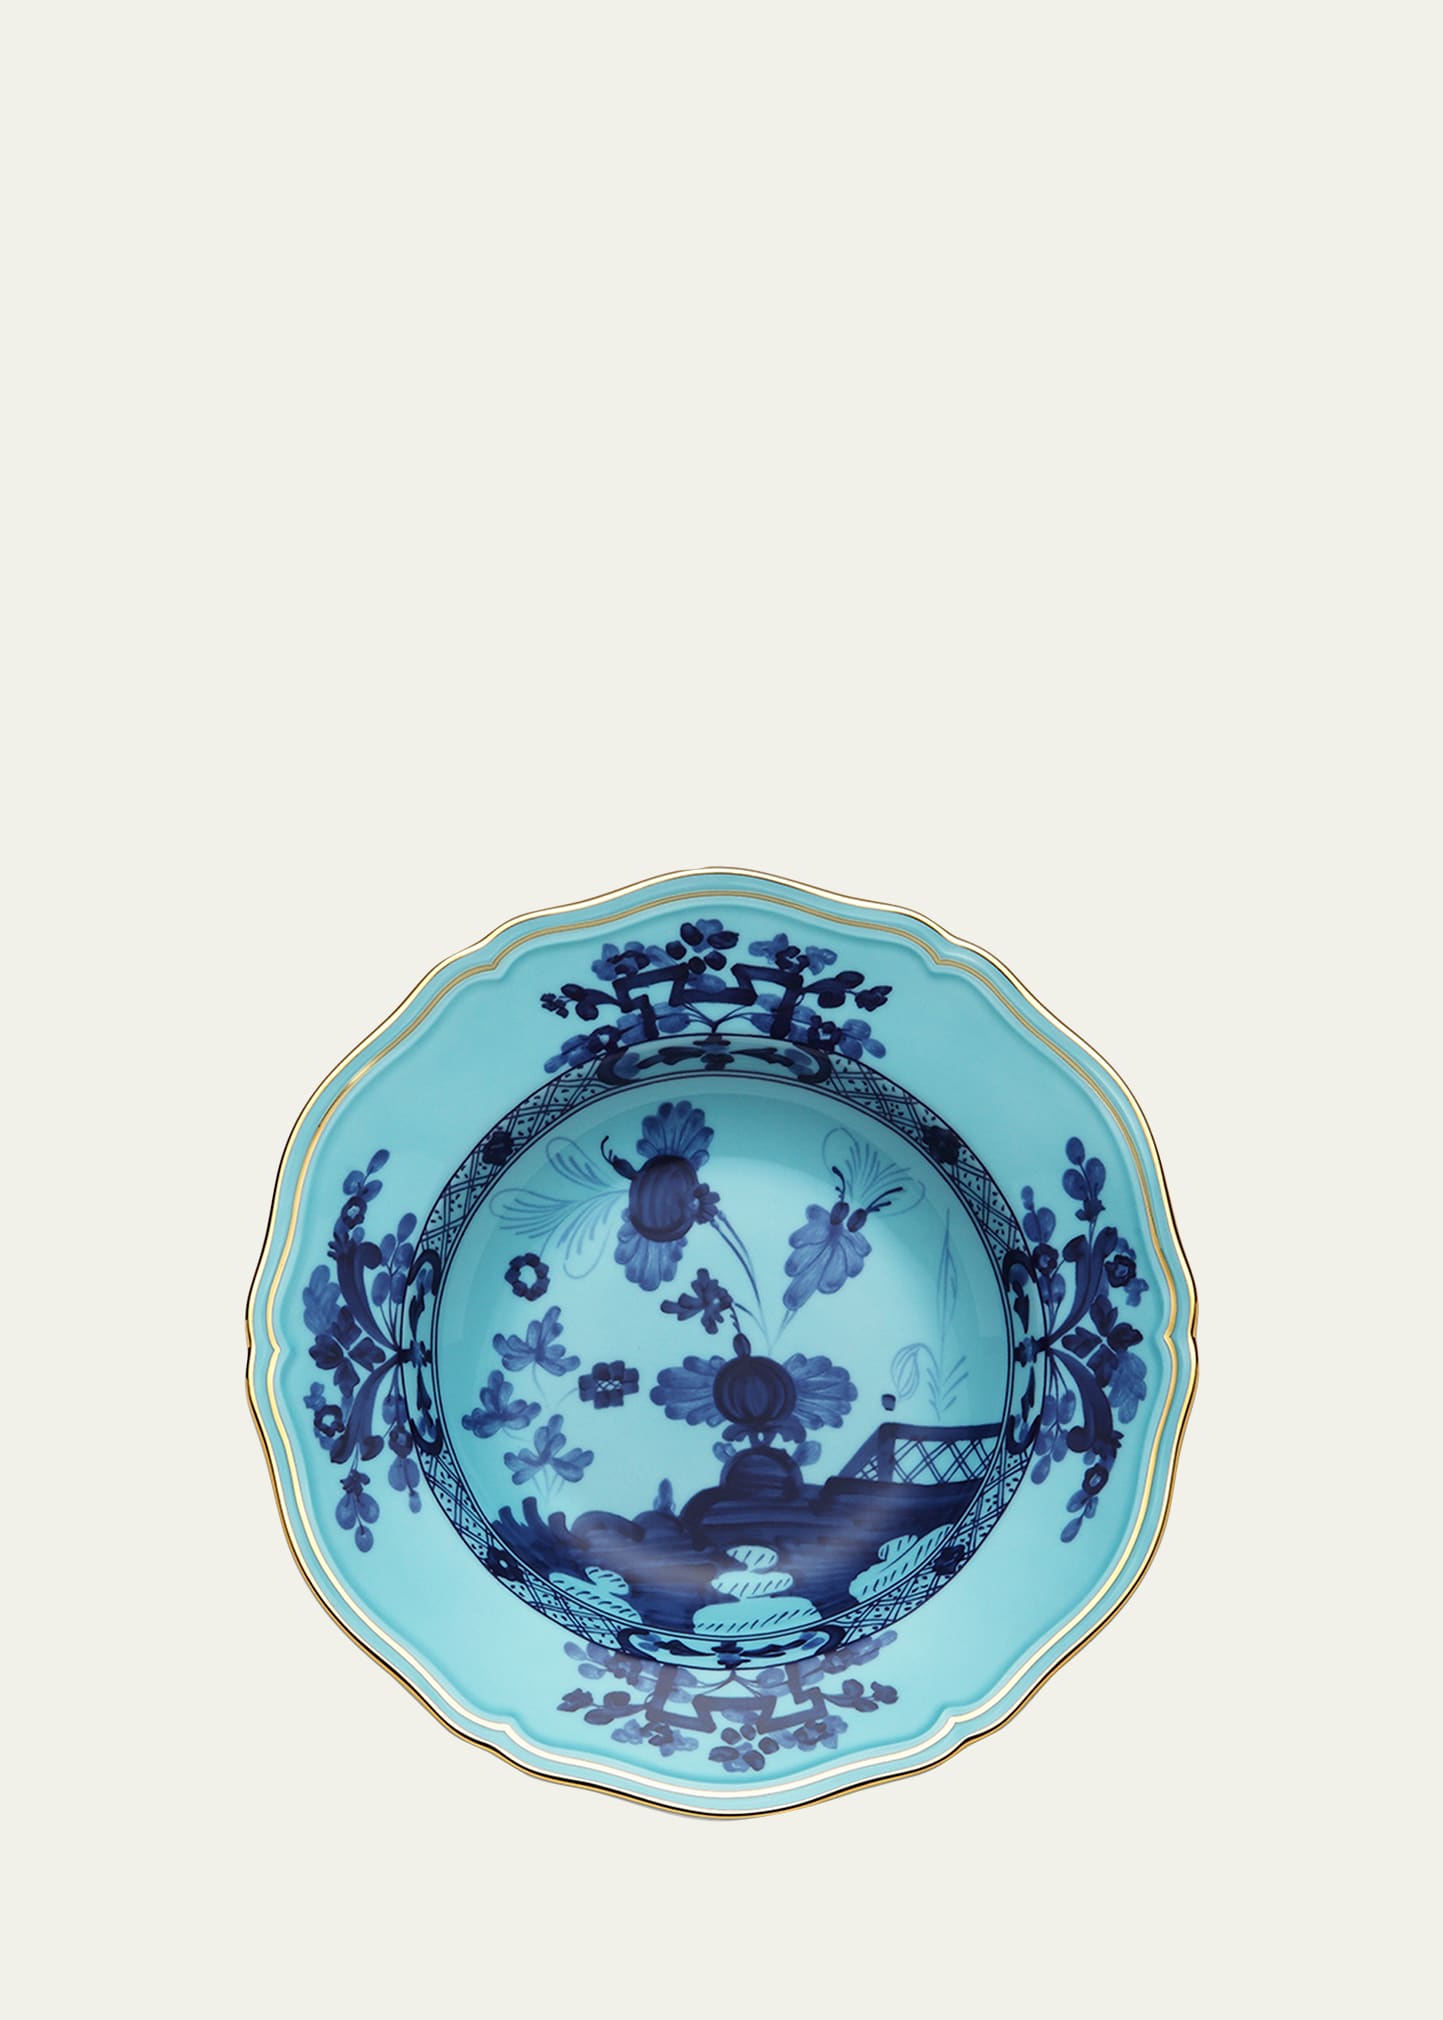 GINORI 1735 Oriente Italiano Rim Soup Plate, Iris